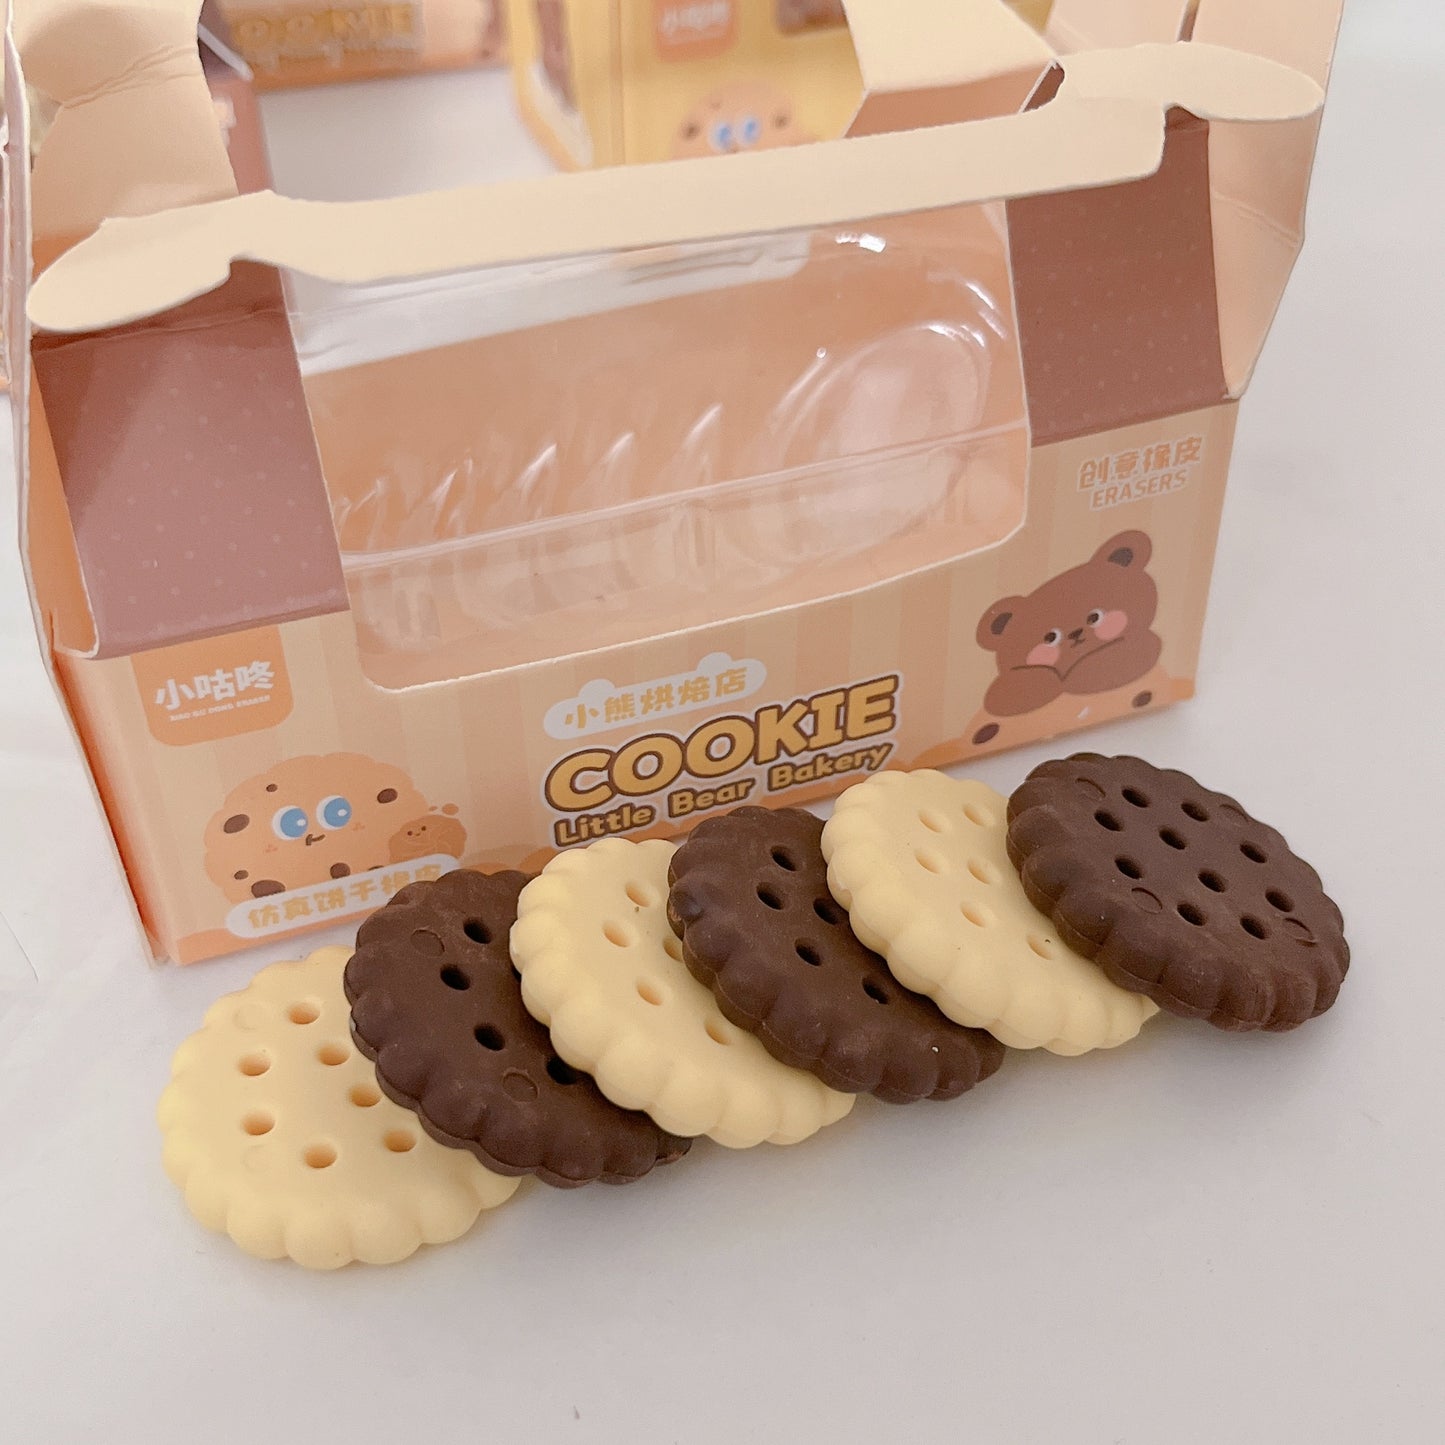 Cookie box eraser set